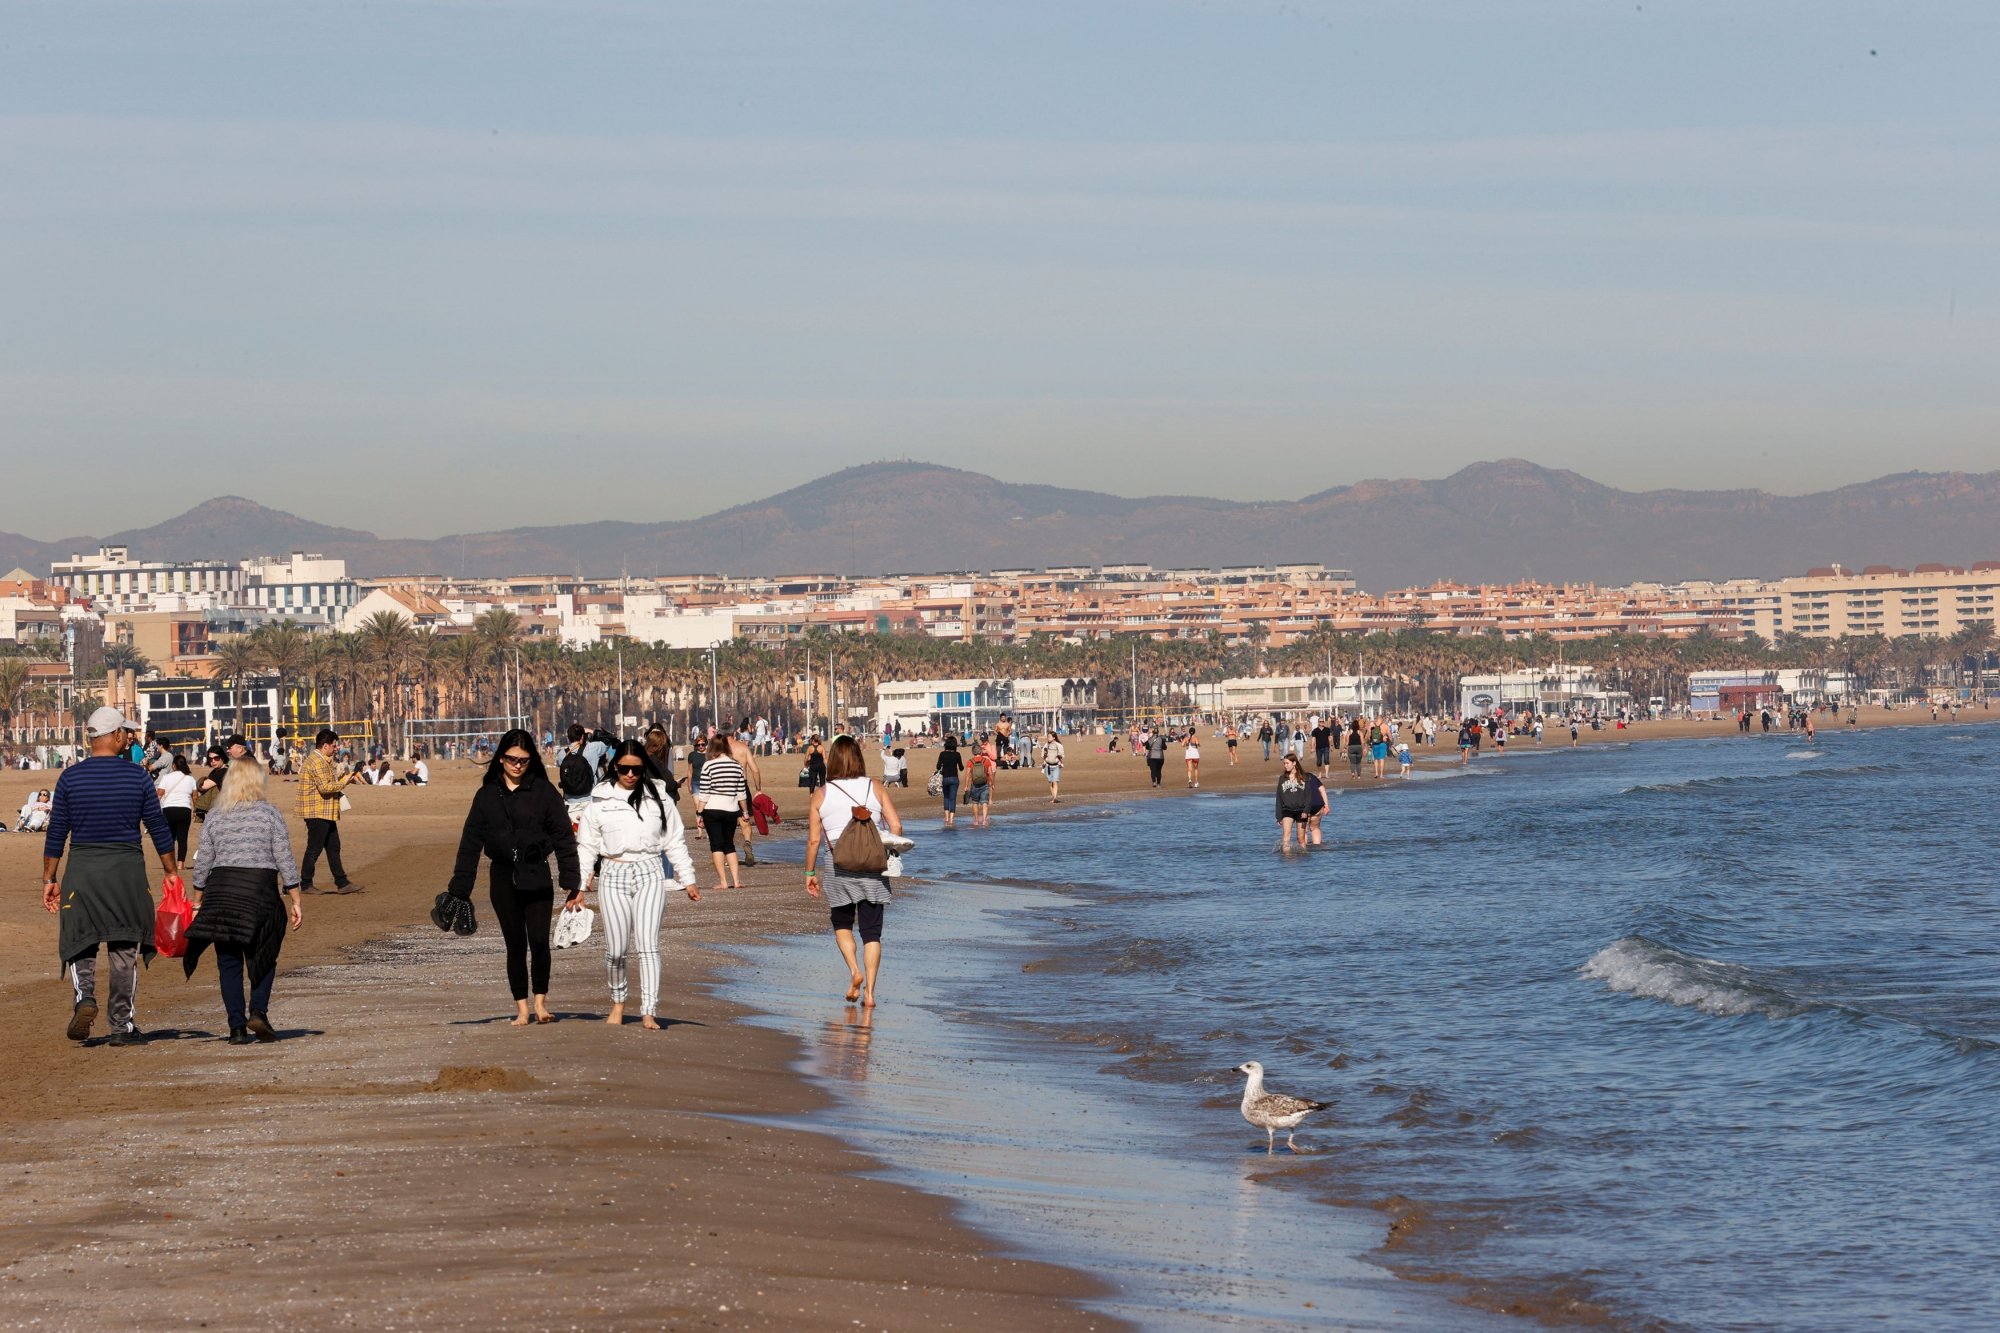 Ισπανία: Στην παραλία για ηλιοθεραπεία κάτοικοι και τουρίστες - Κύμα ζέστης πλήττει τη χώρα εν μέσω του χειμώνα